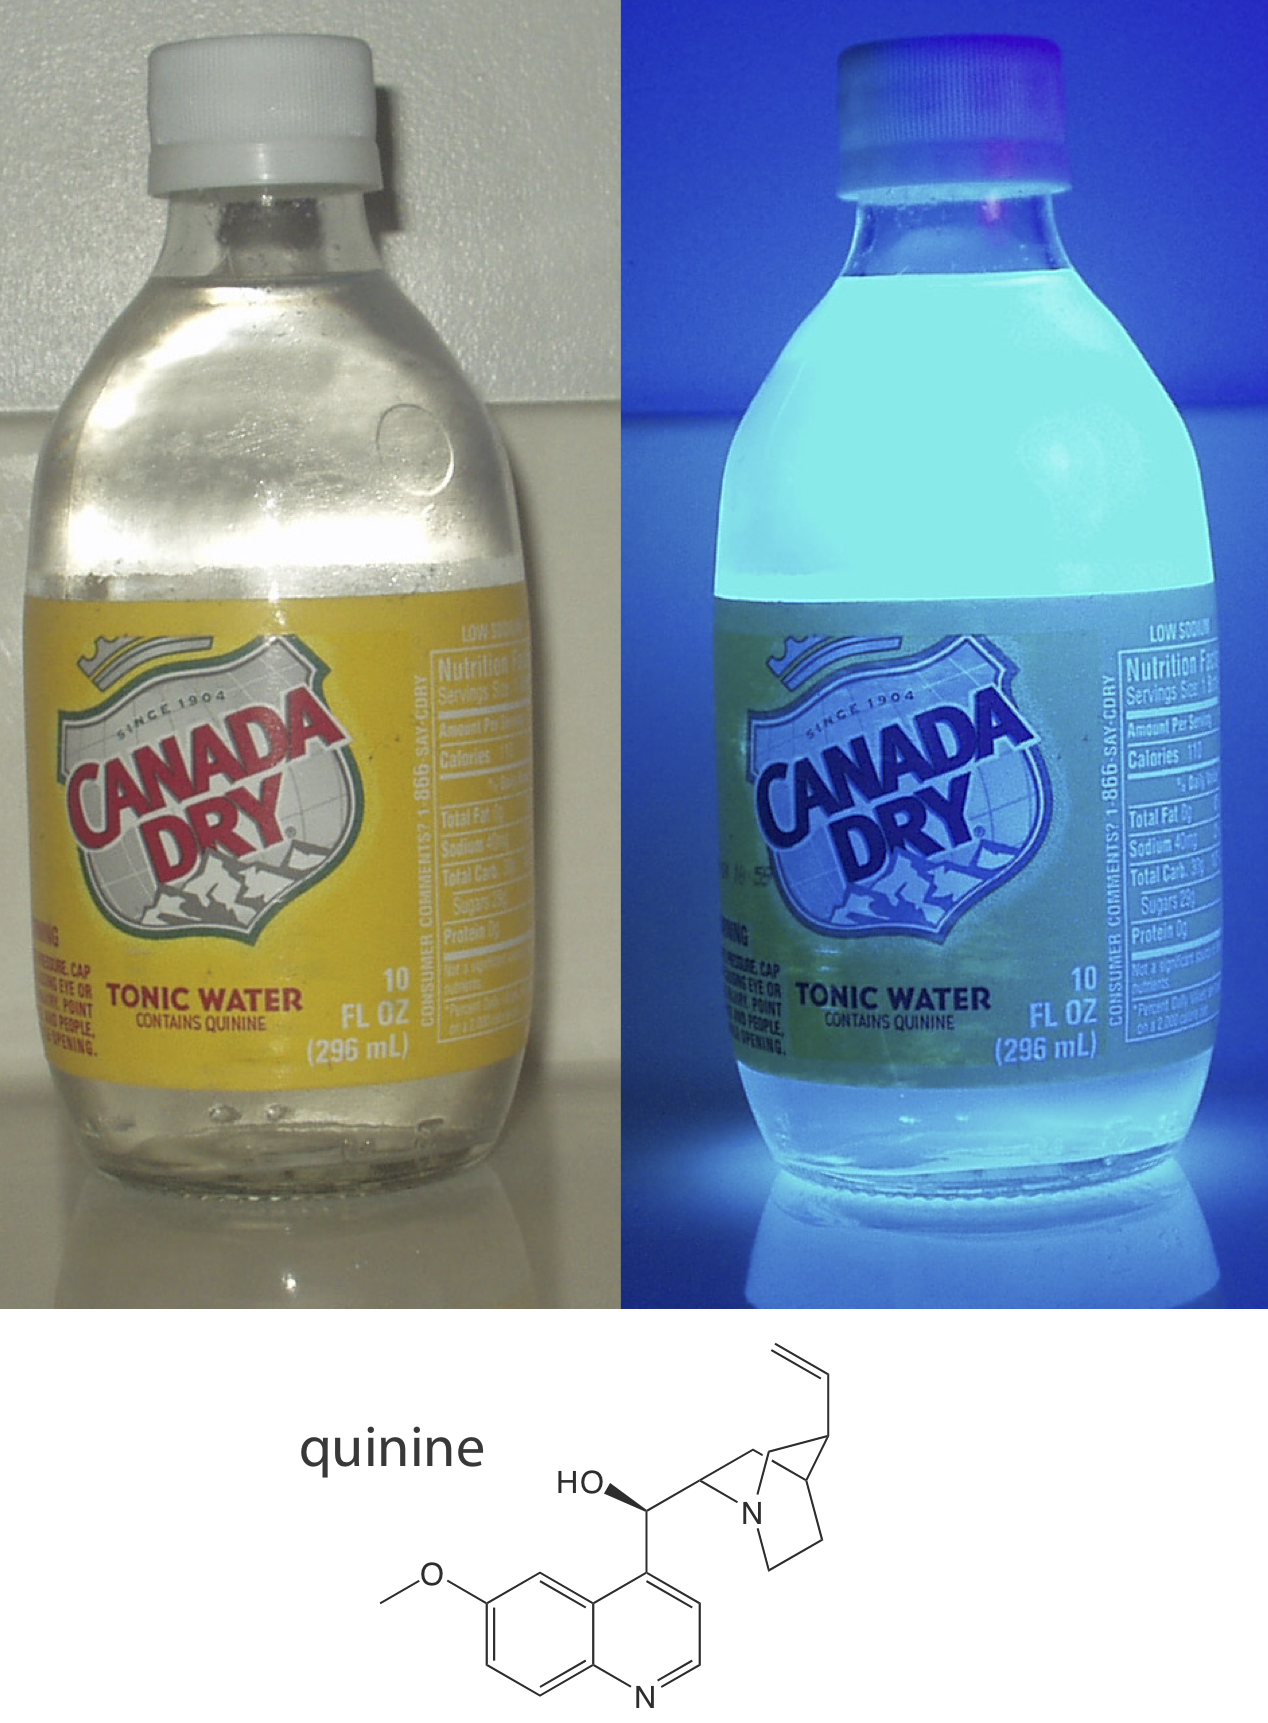 La botella de agua tónica se muestra bajo luz normal y bajo una luz negra. Bajo luz normal, la botella es clara e incolora, pero bajo la luz negra, la botella brilla de un color azul.